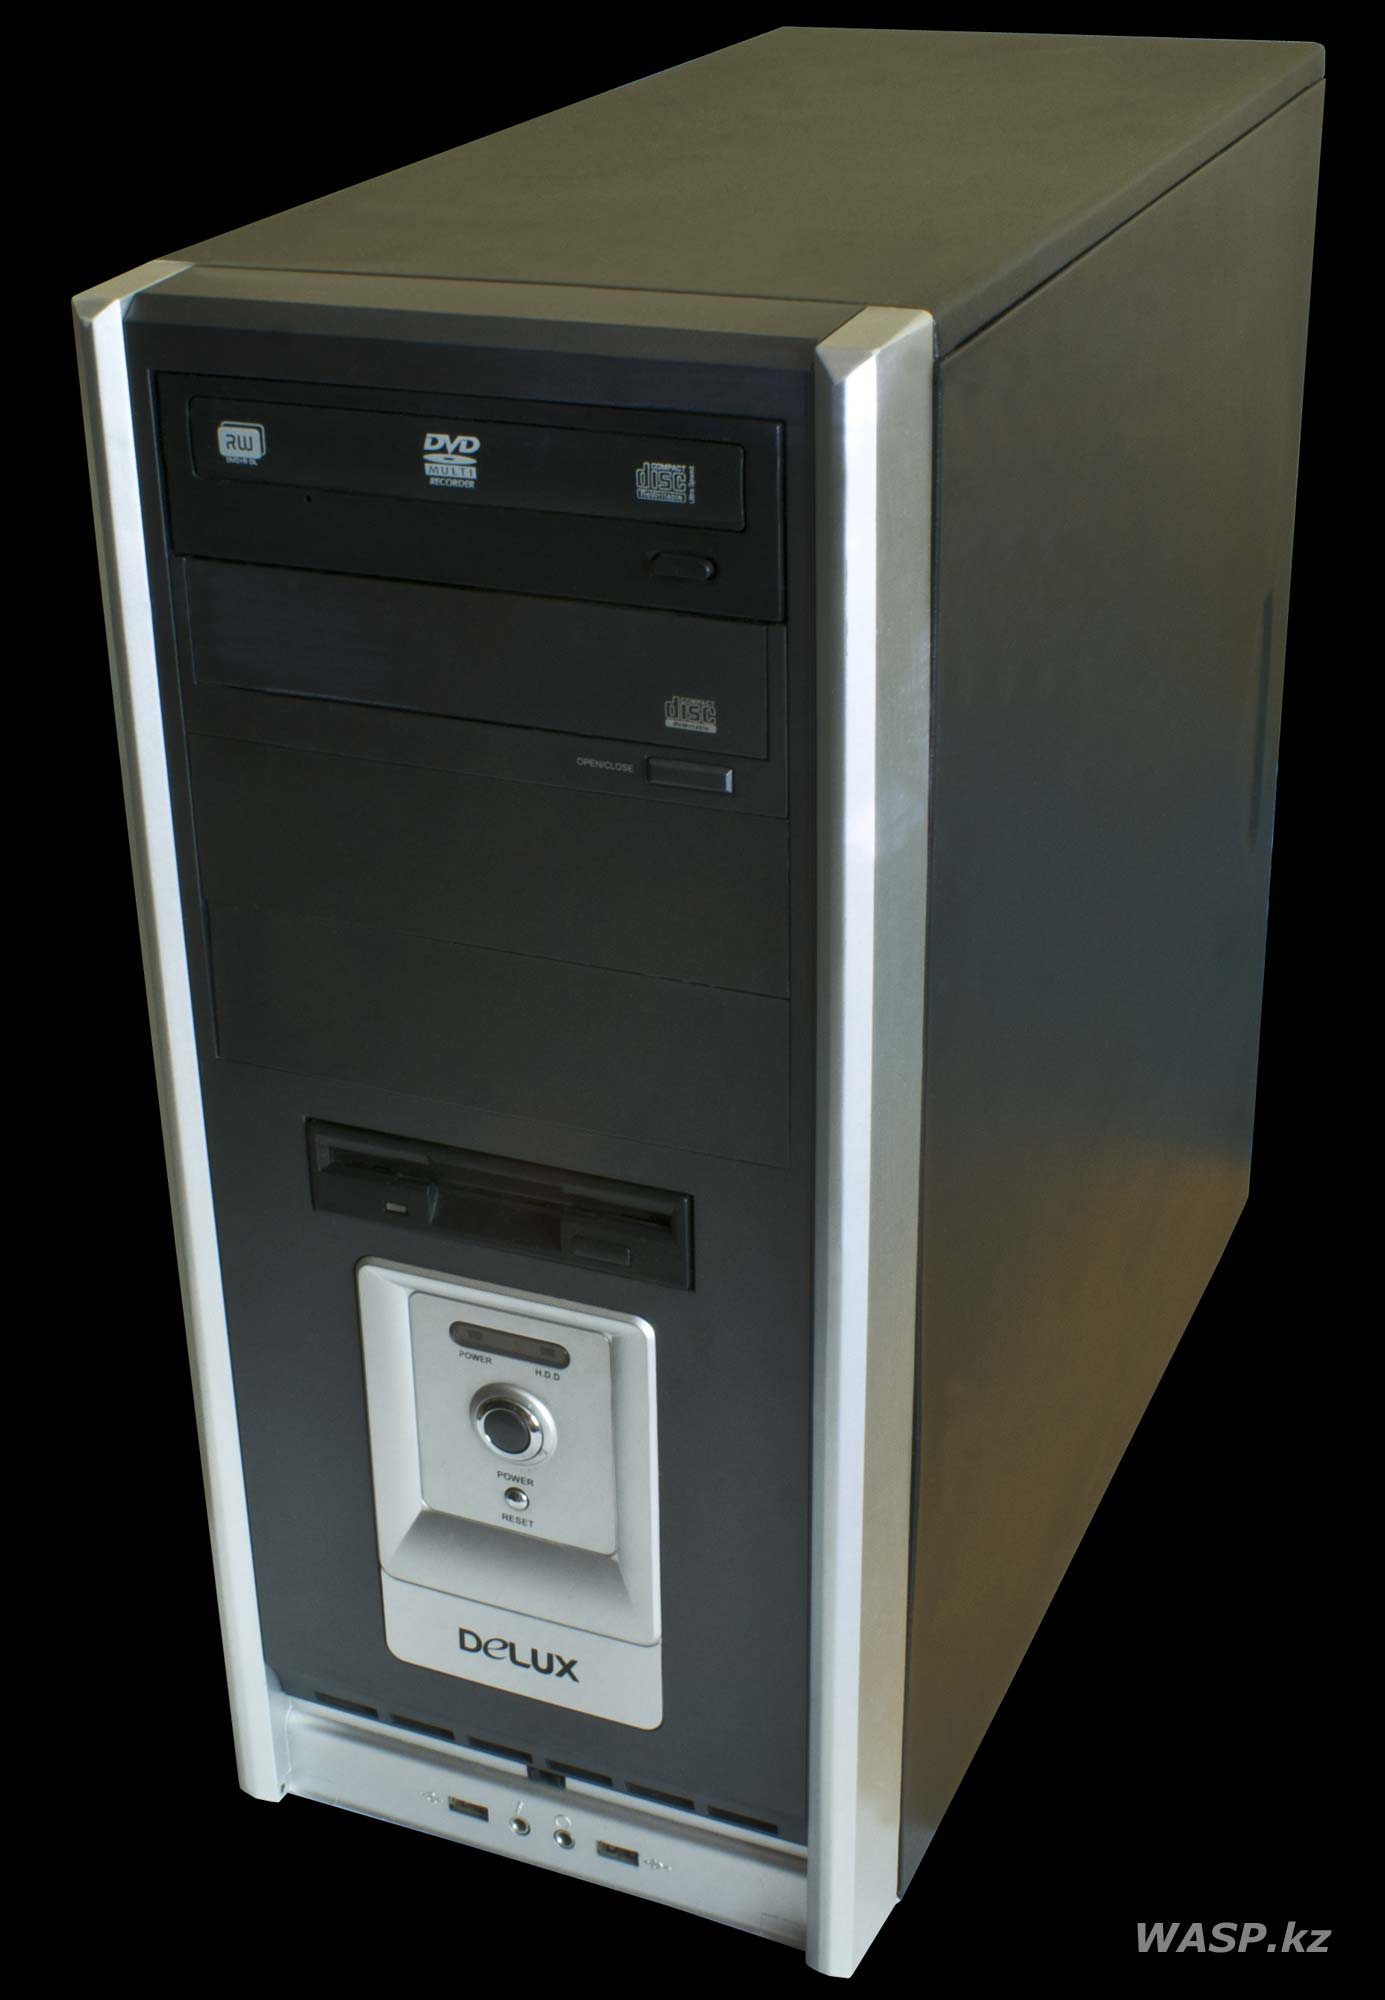 Delux обзор ATX компьютерного корпуса 2007 года